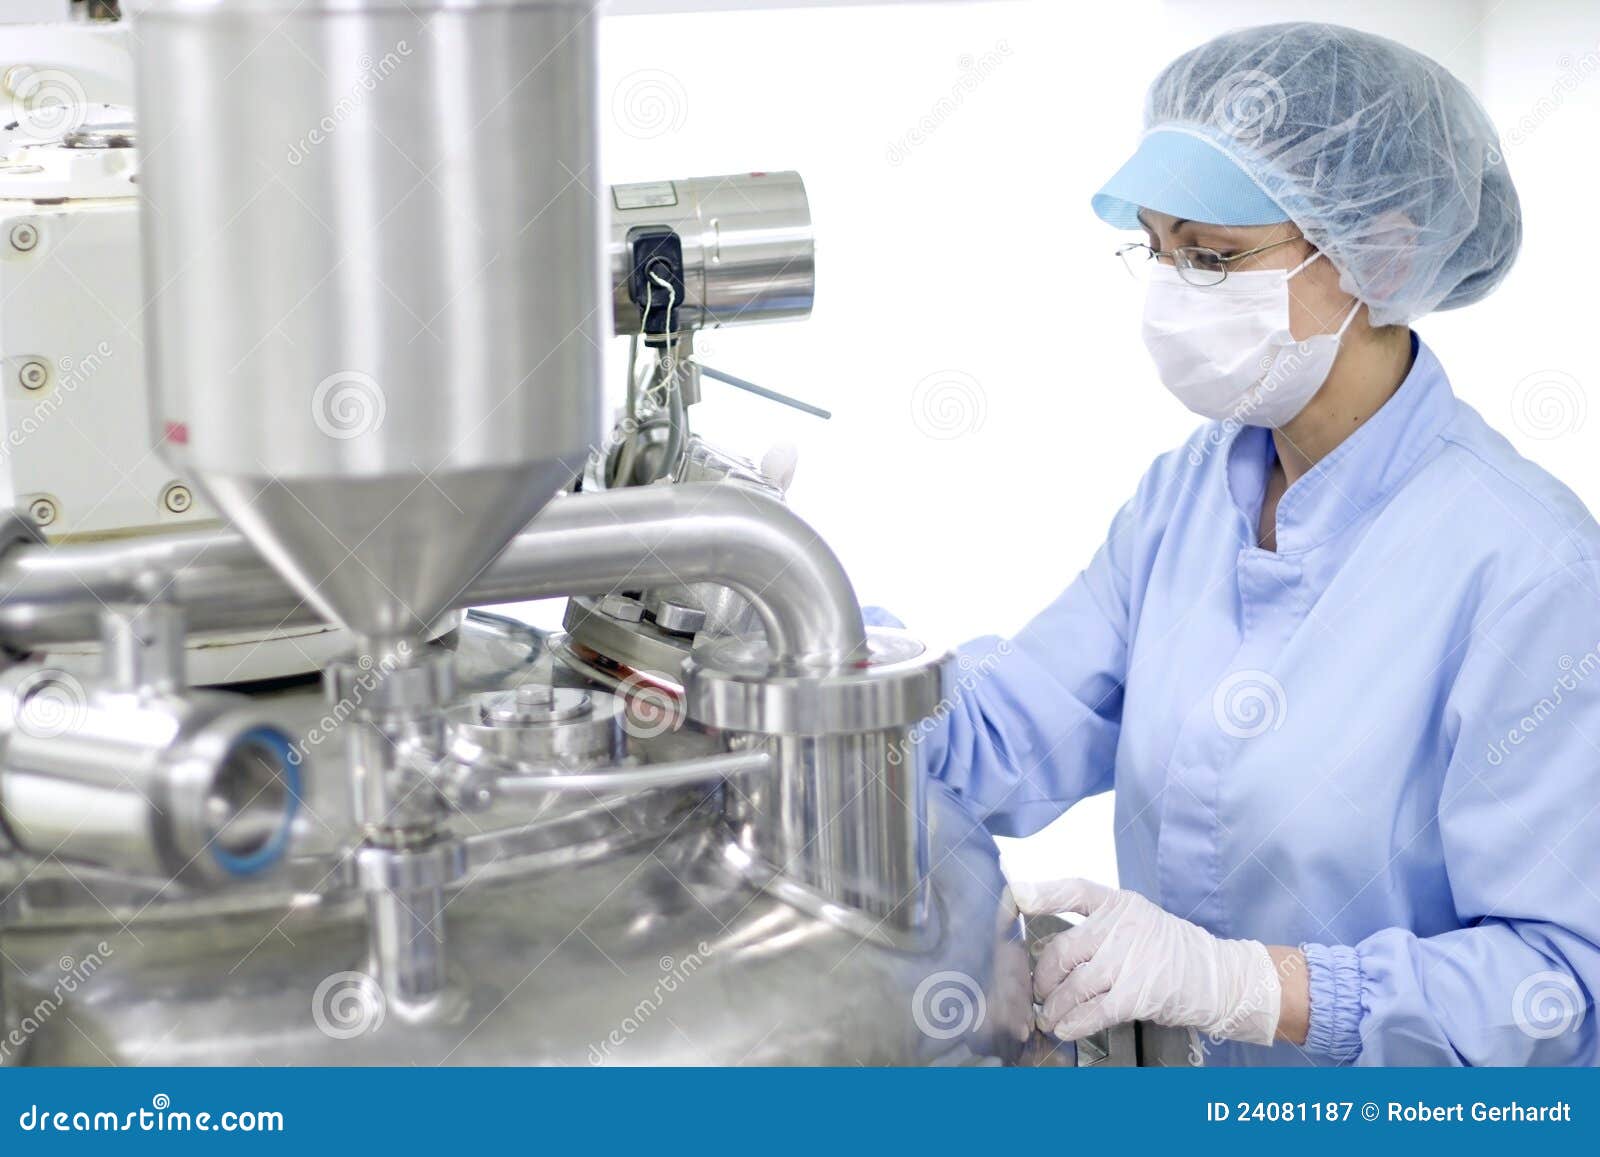 operator of a sterile machine